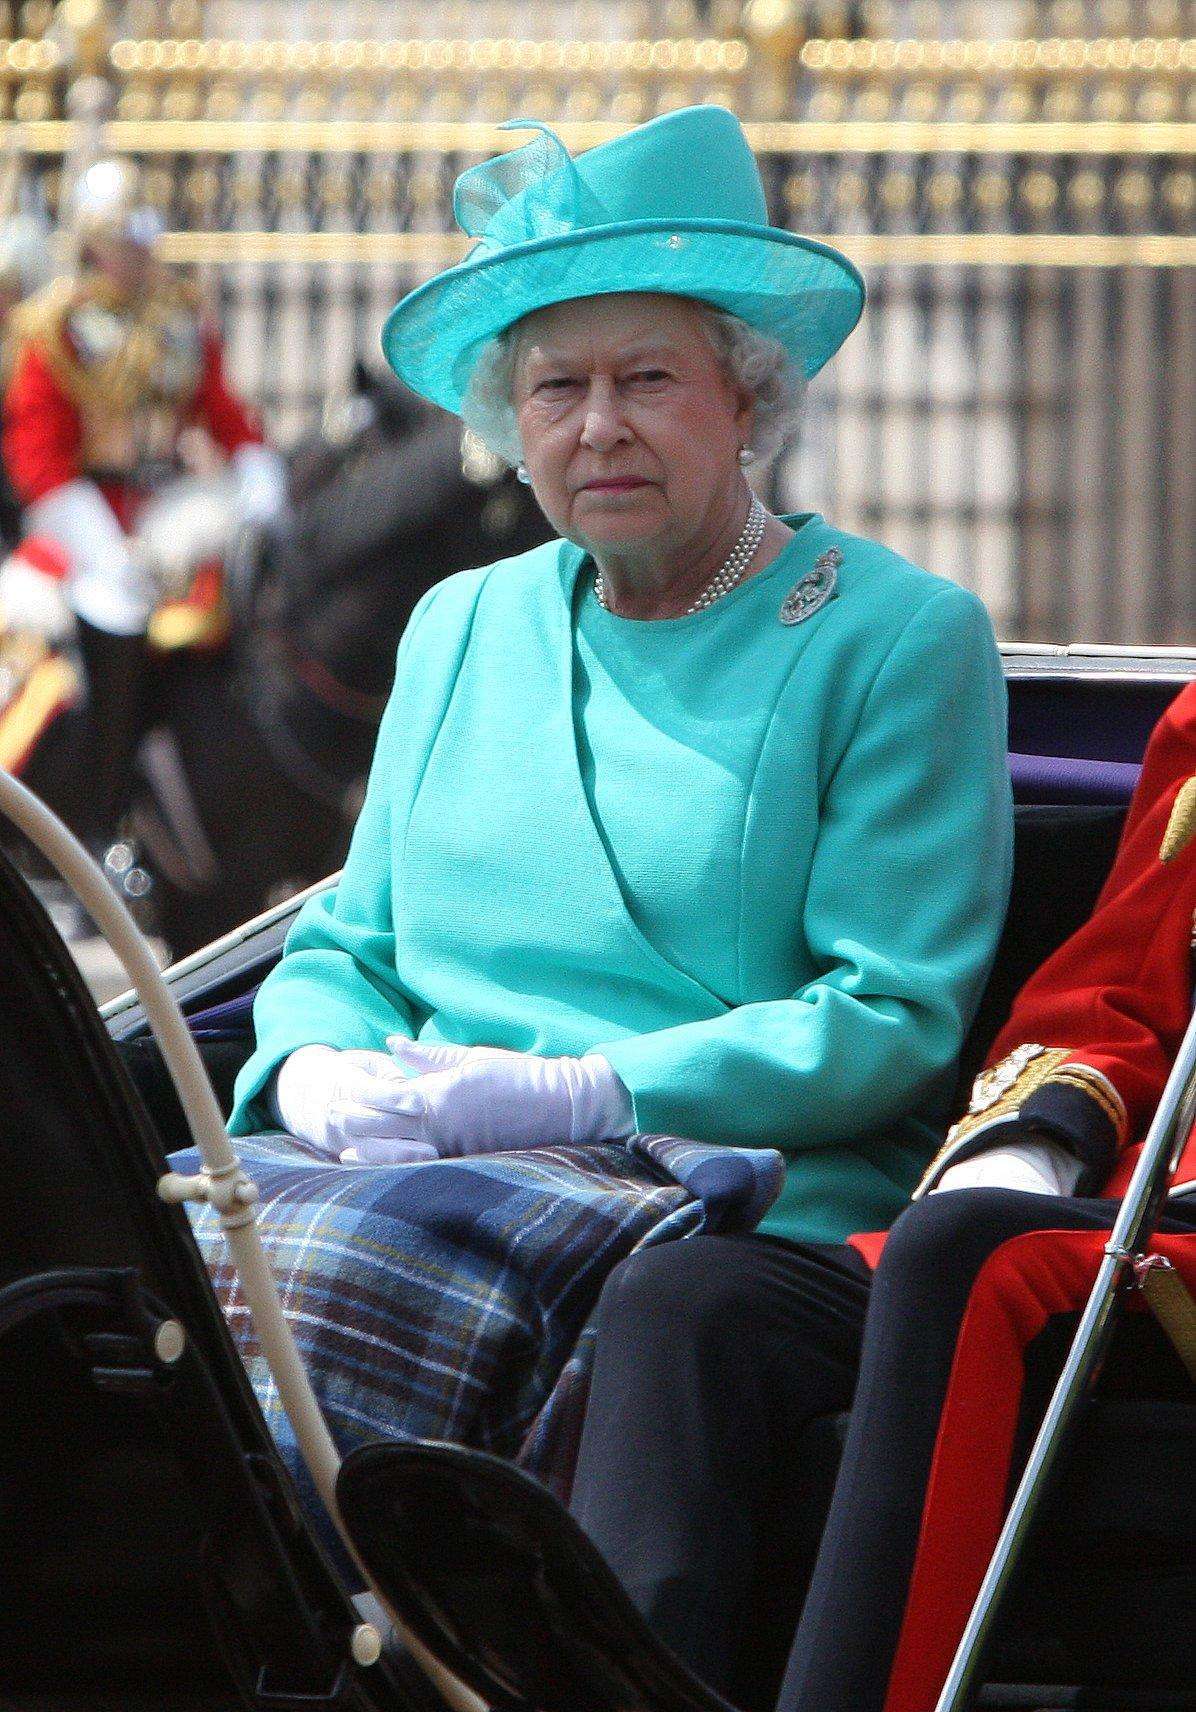 L'azzurro dei vestiti della Regina